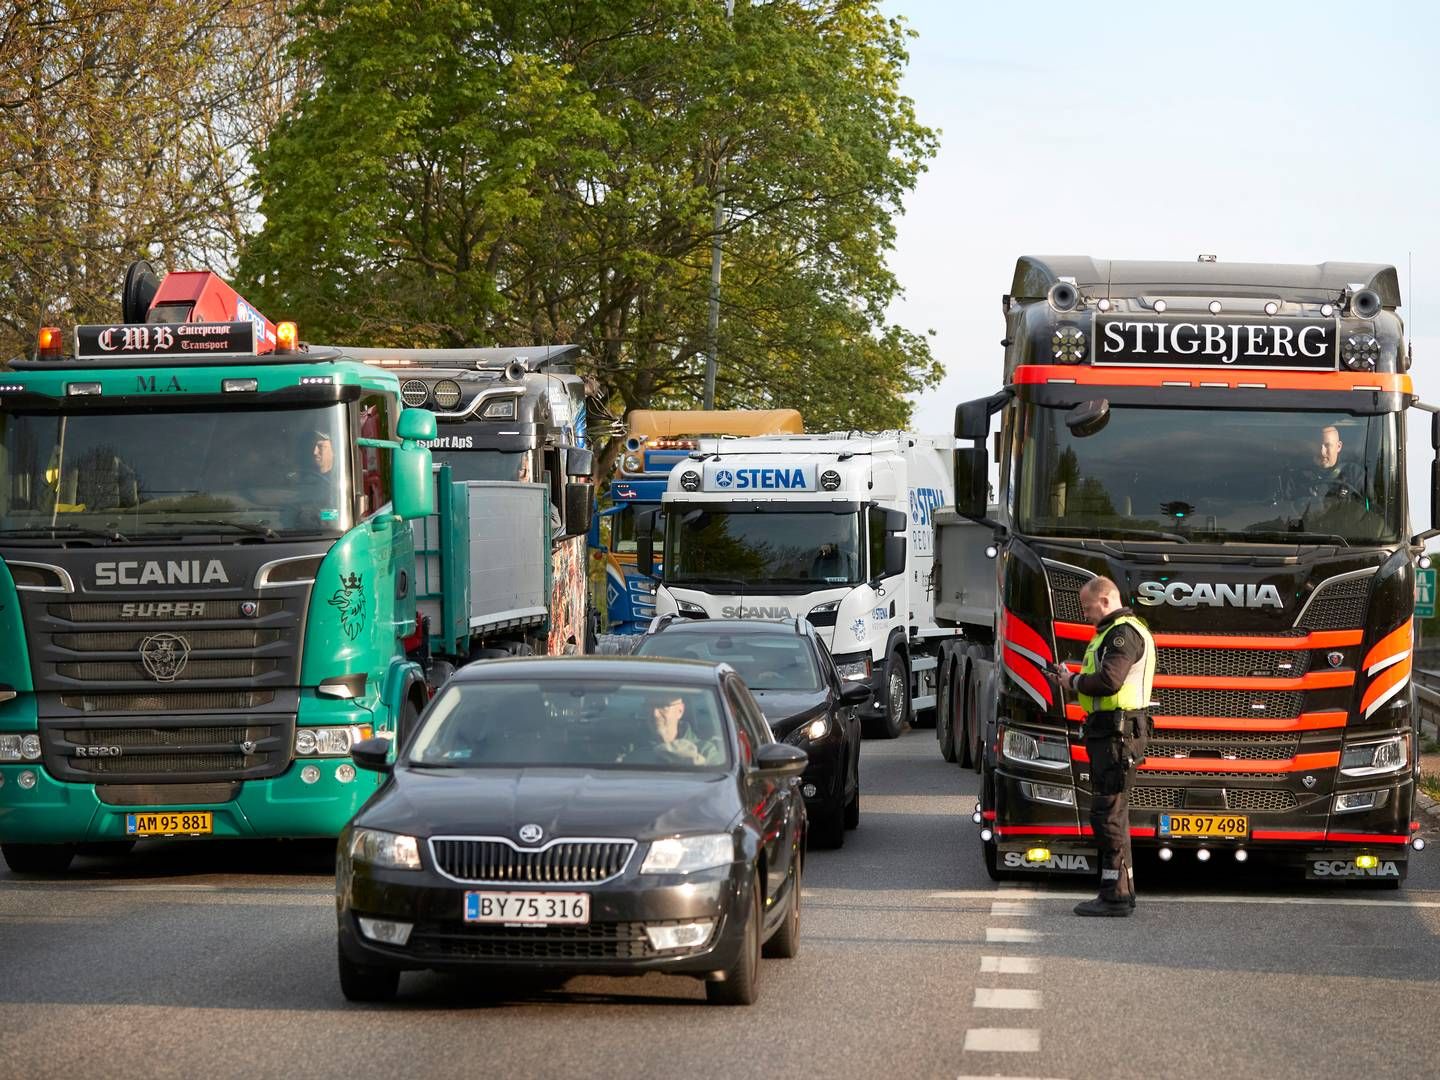 Regeringens planer om at indføre den kilometerbaserede vejafgift skabte i foråret flere lastbildemonstrationer rundt i landet blandt frustrerede vognmænd.